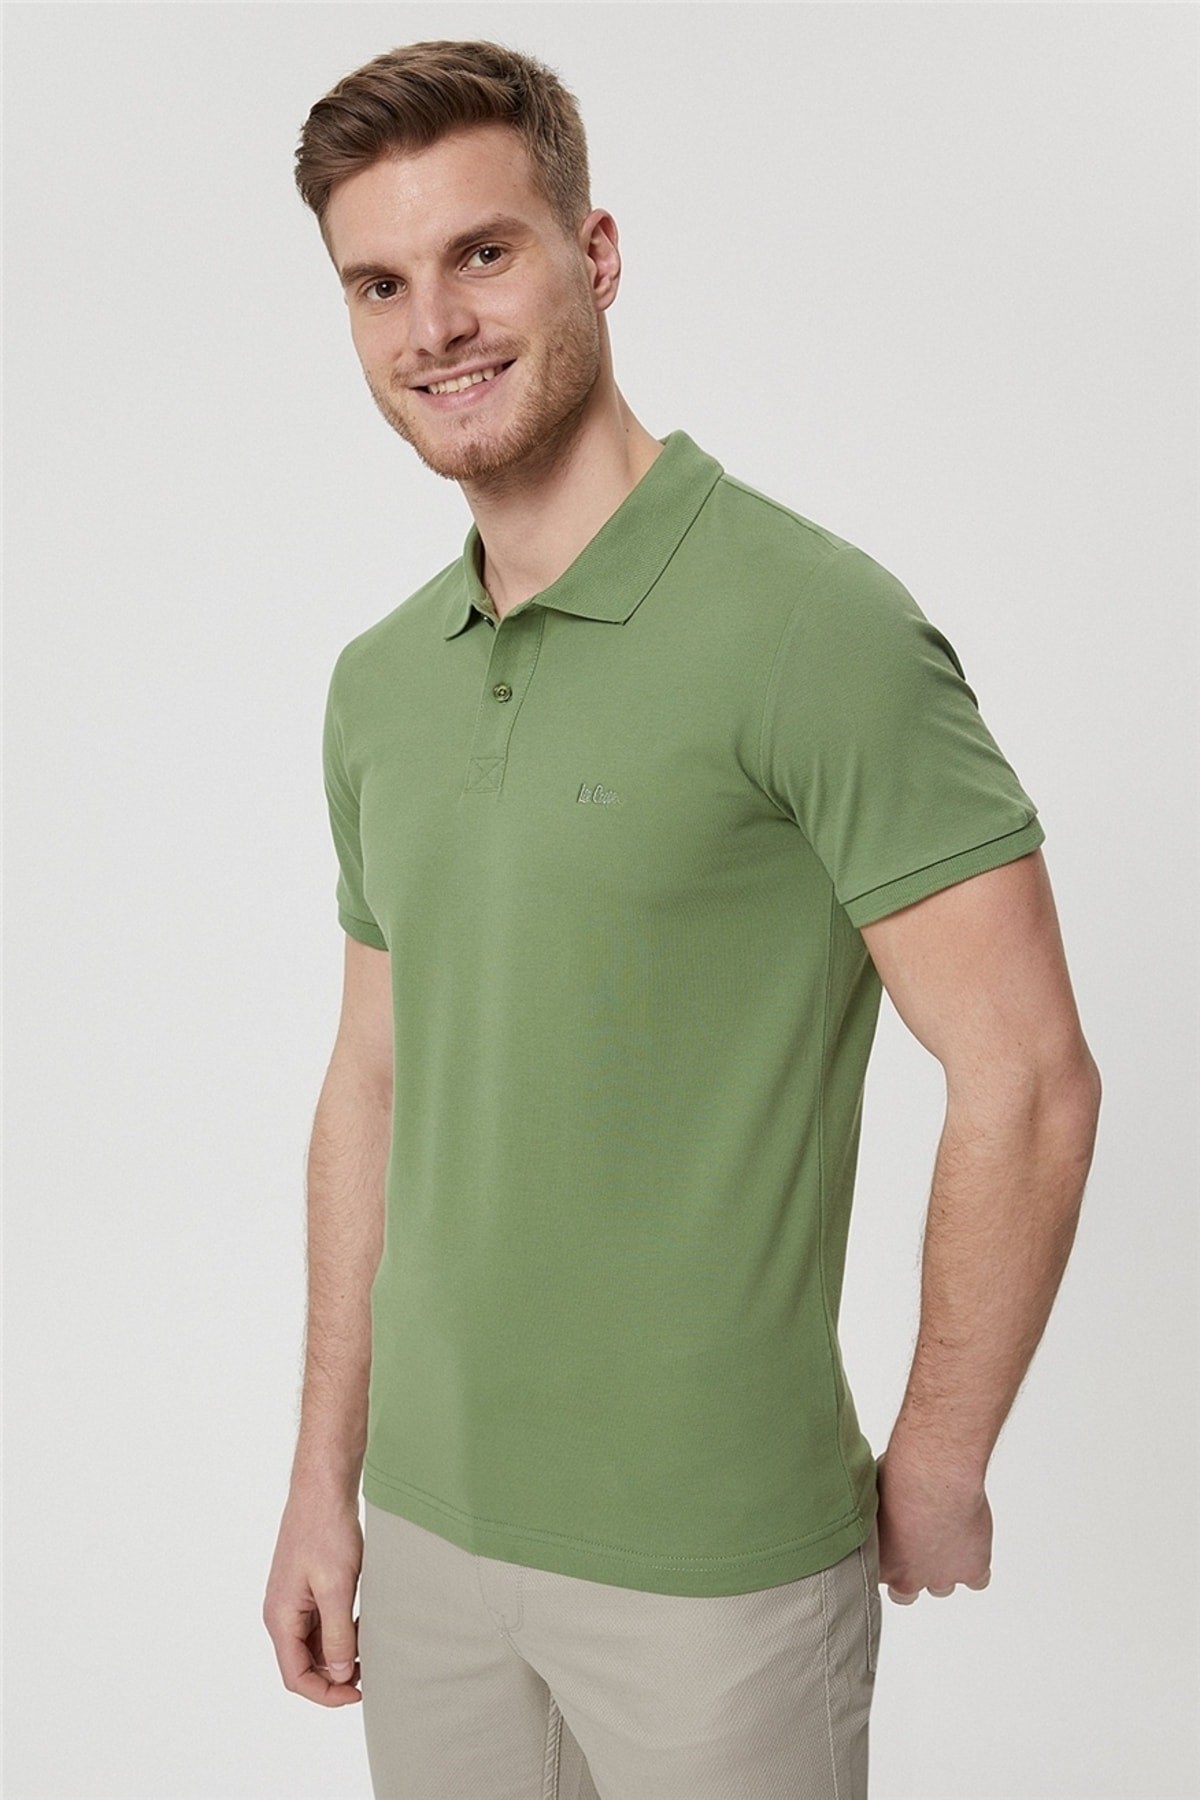 Lee Cooper Erkek T-Shirt 222 LCM 242057 Yeşil